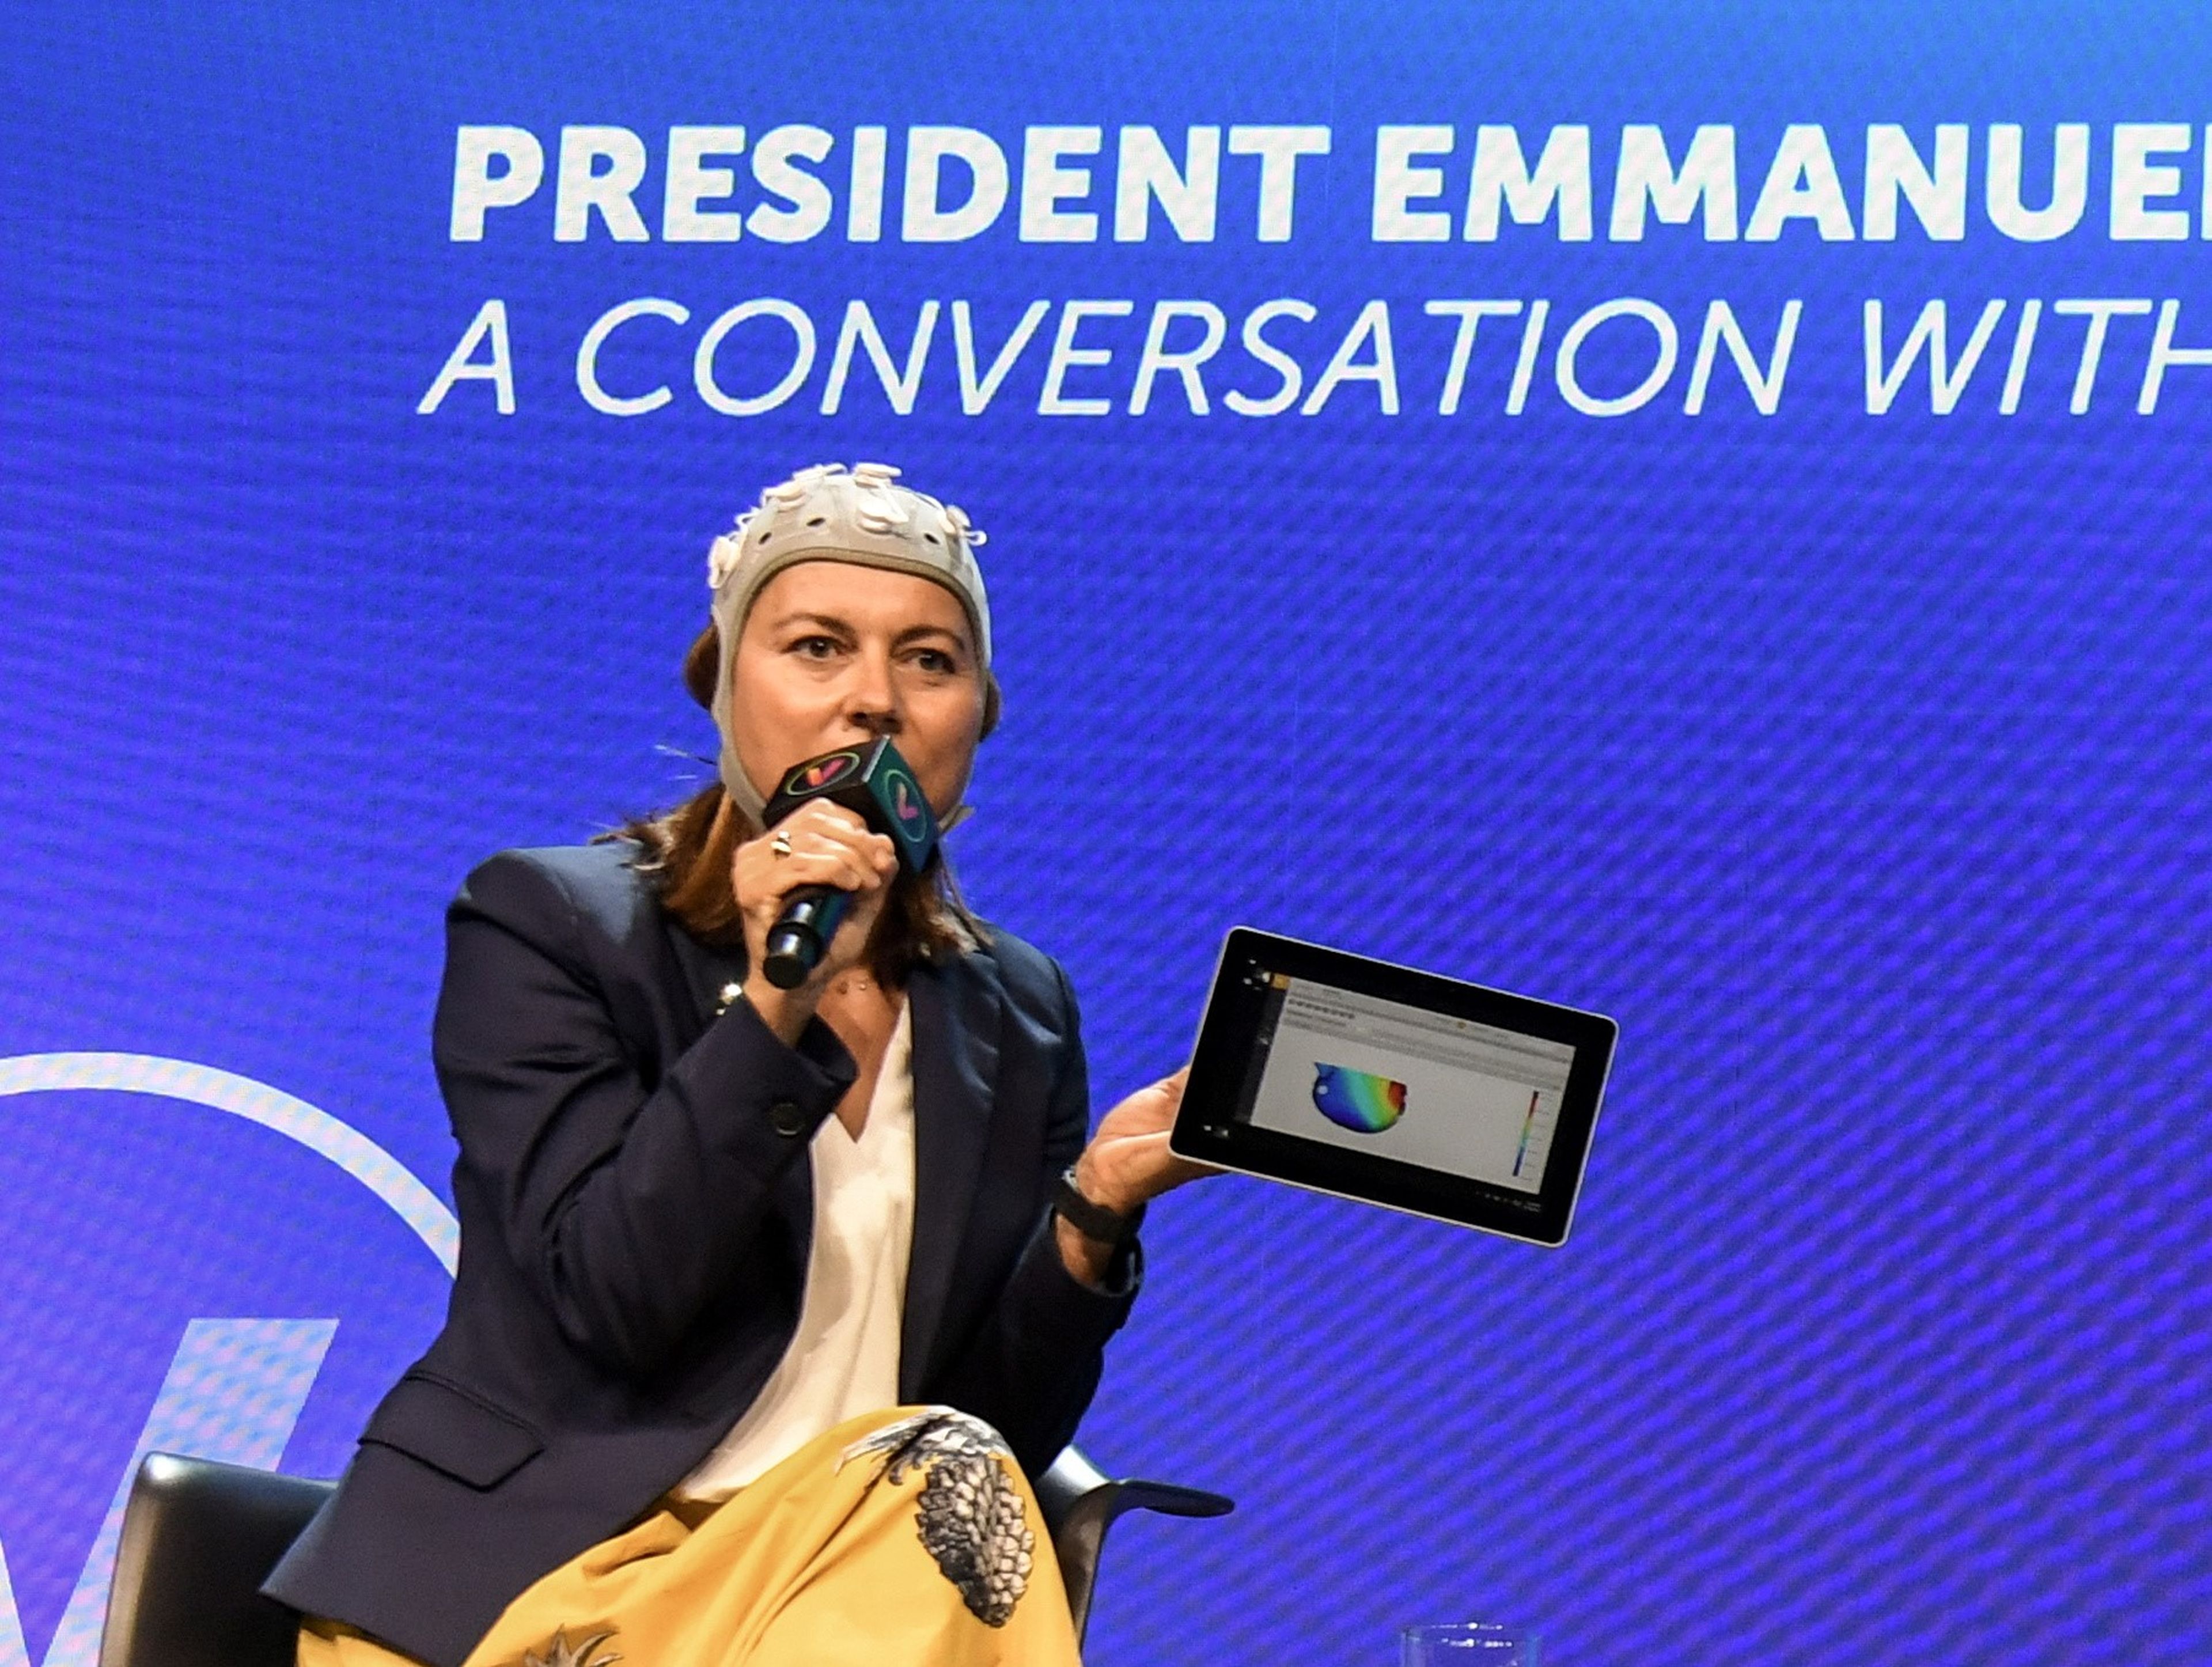 Ana Maiques, CEO y cofundadora de Neuroelectrics, en un acto reciente con el dispositivo Starstim en su cabeza.